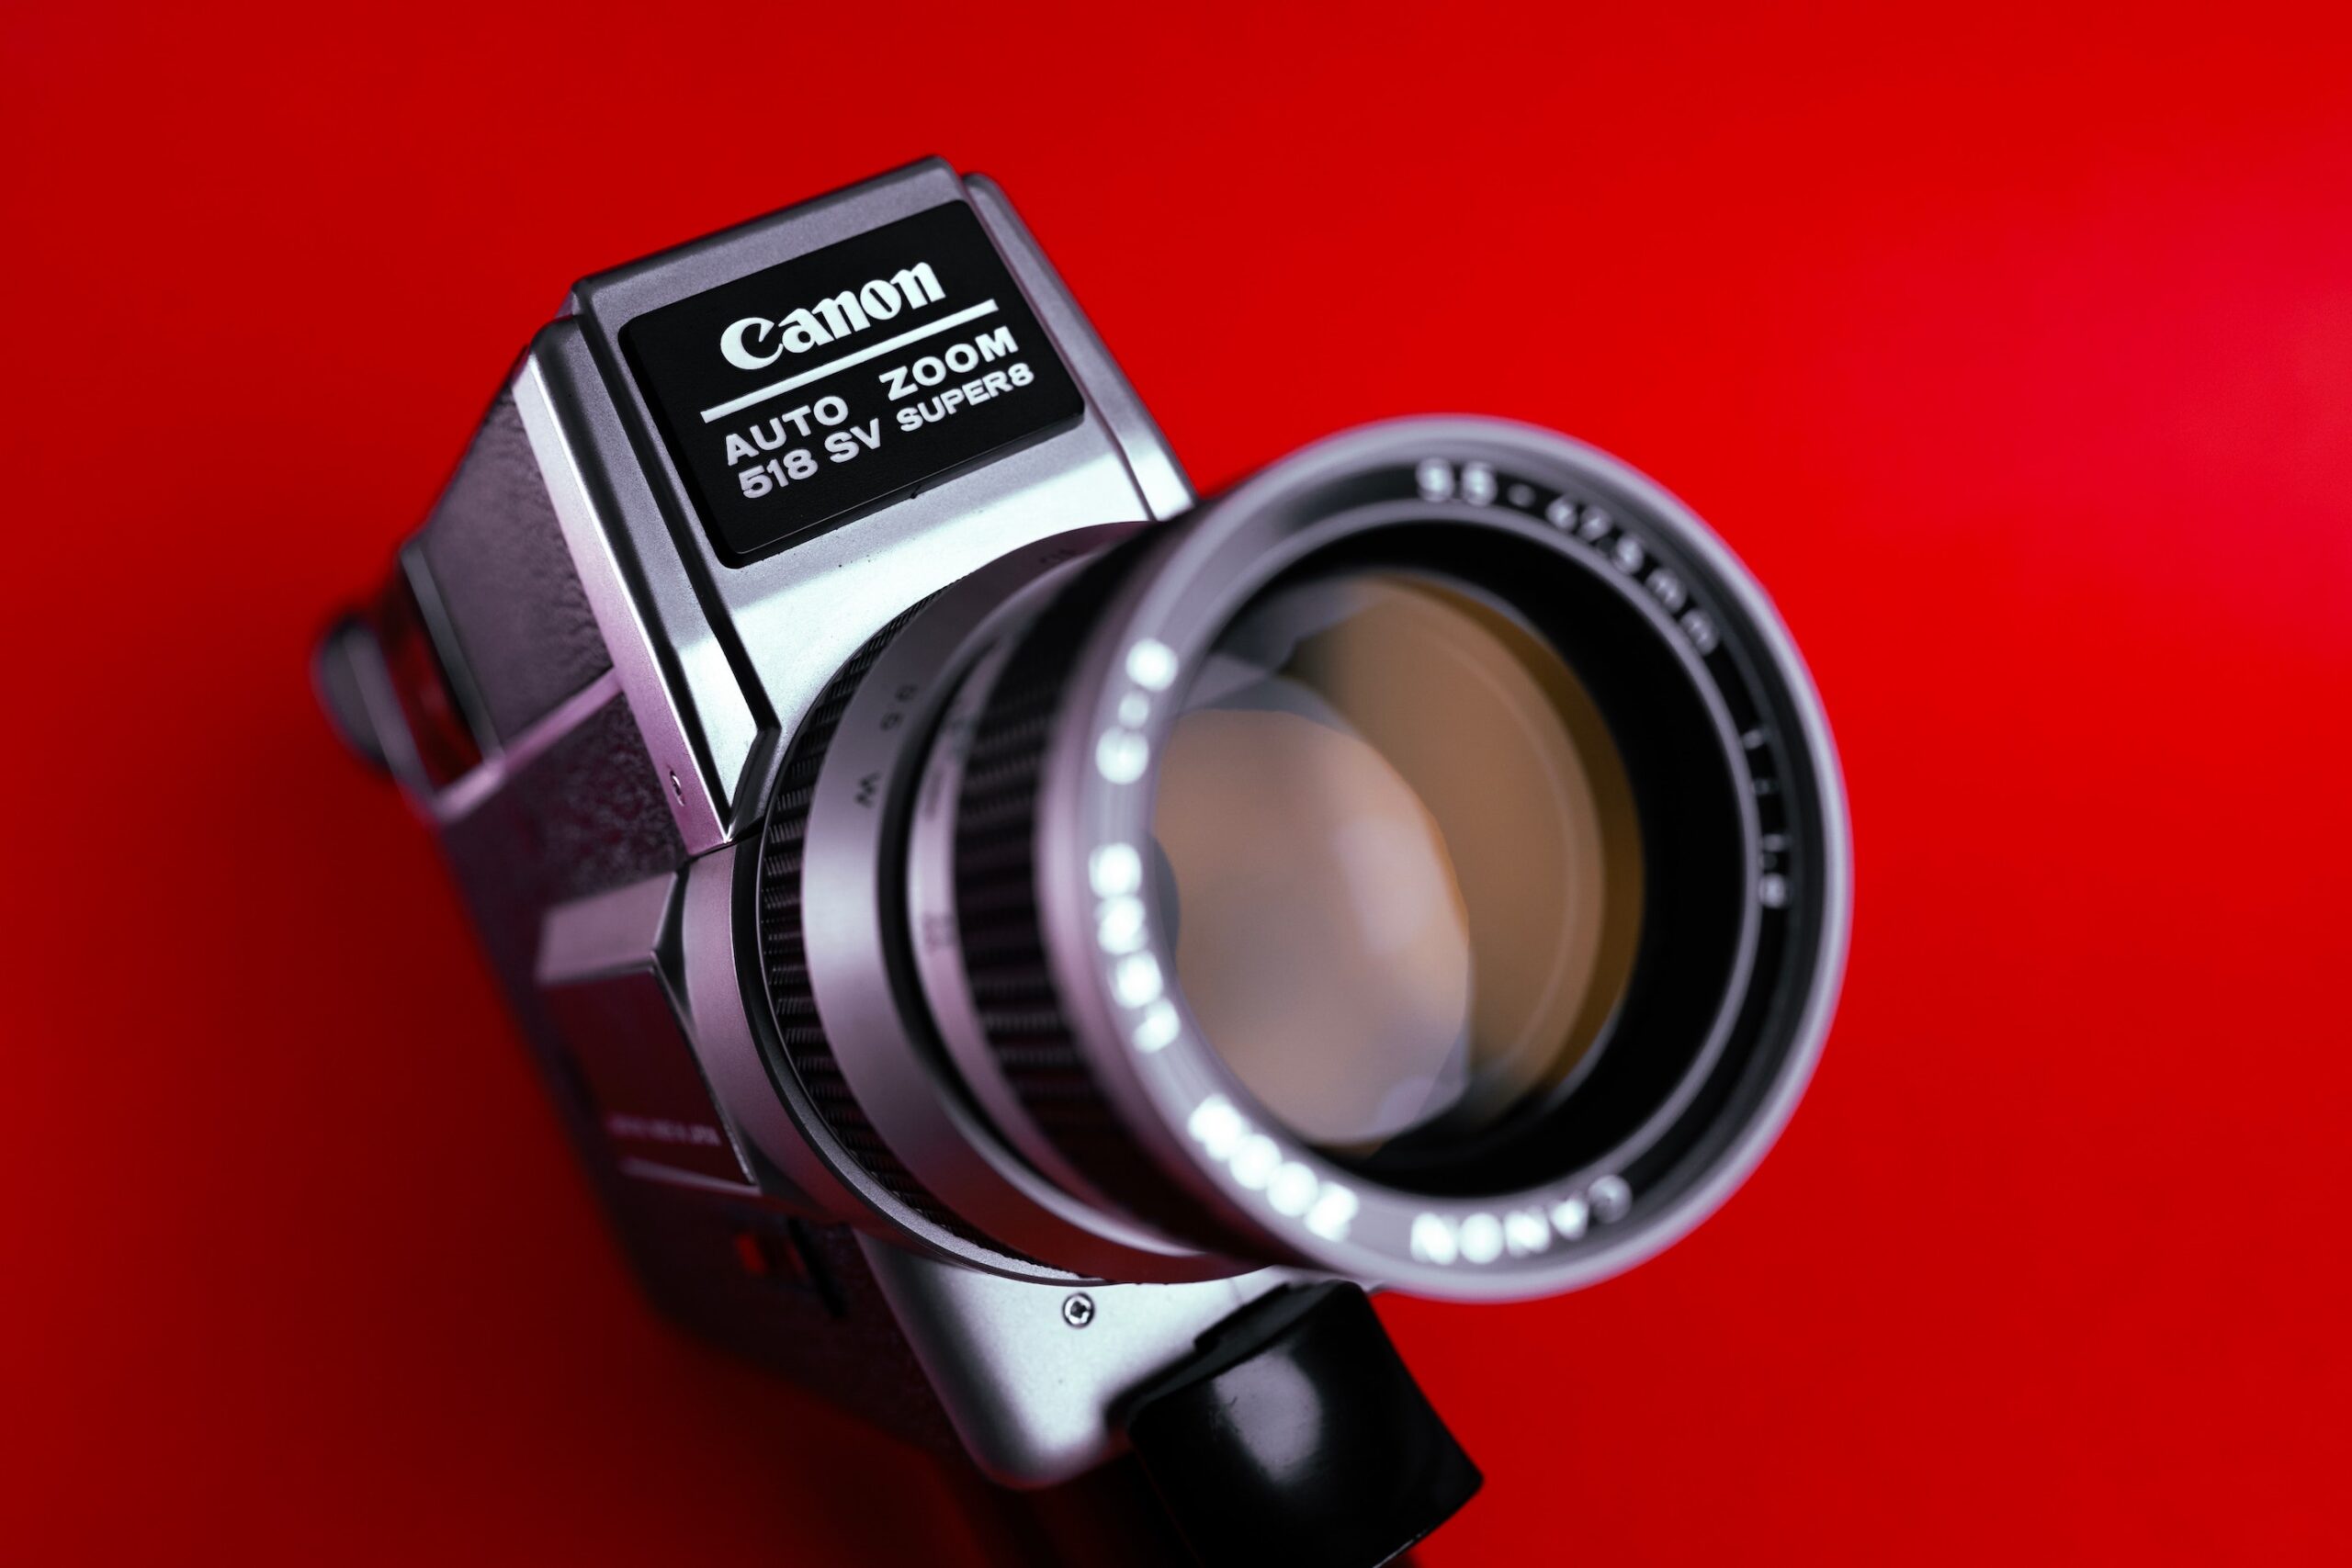 super 8 movie camera canon 518